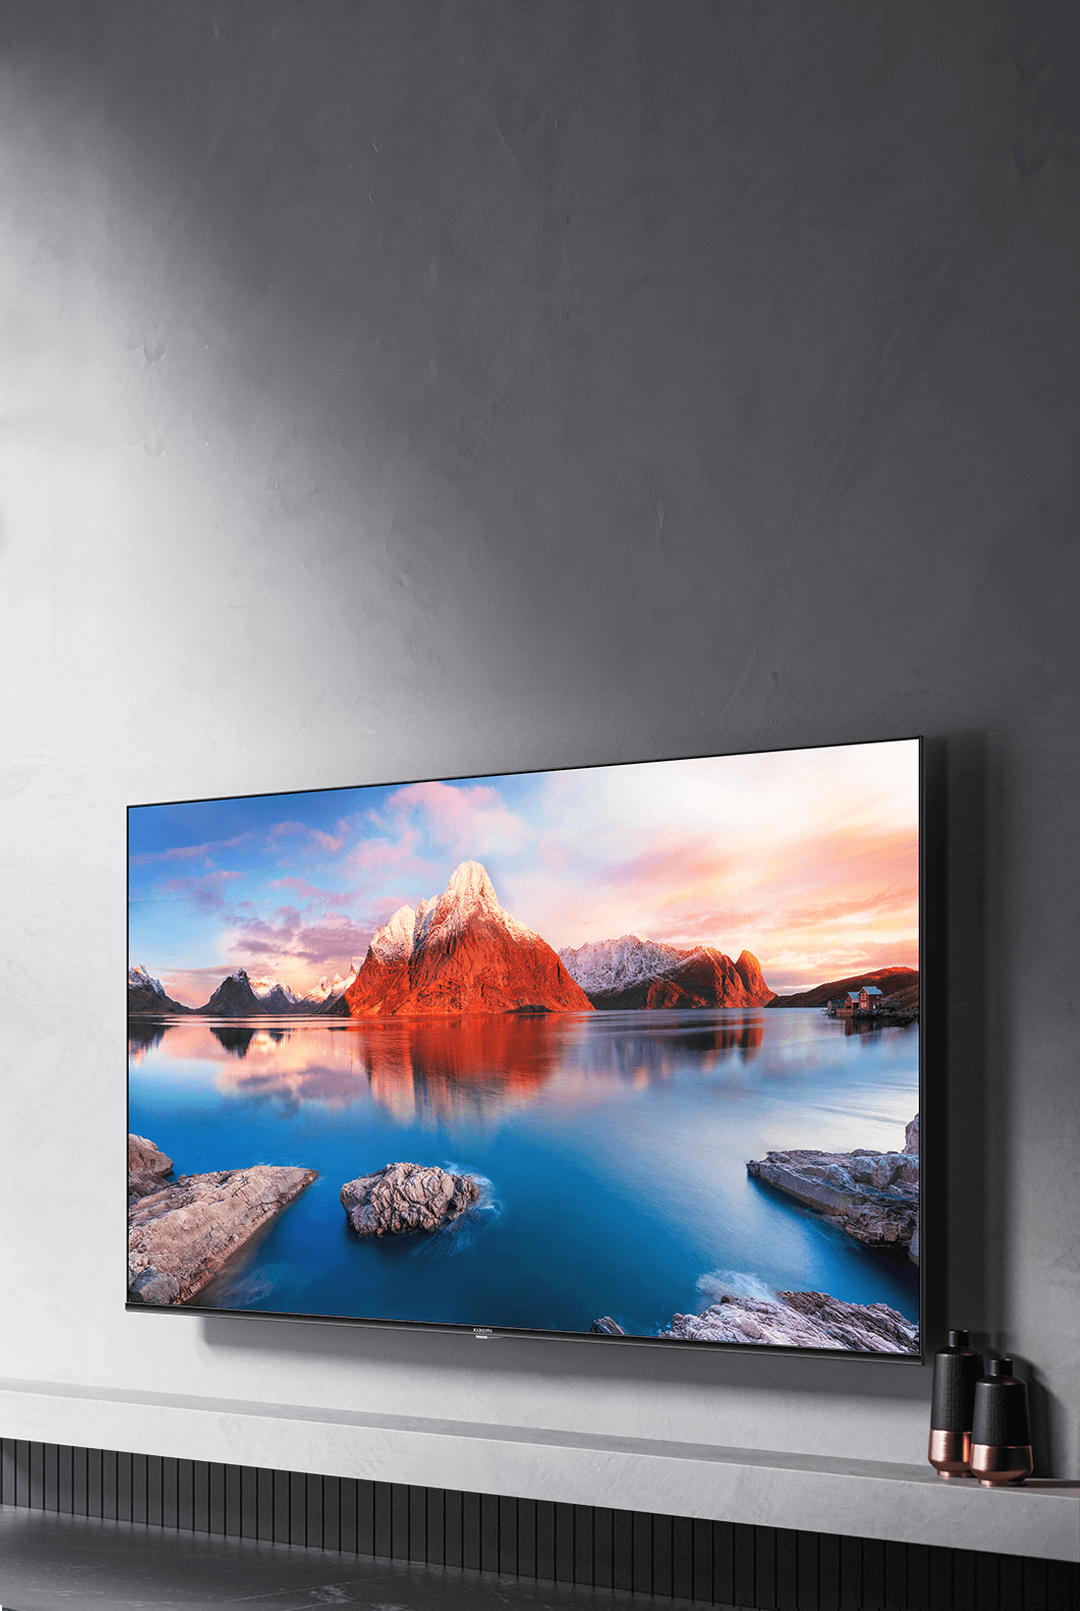 Televisor Xiaomi Smart TV 4K UHD - A Pro 55